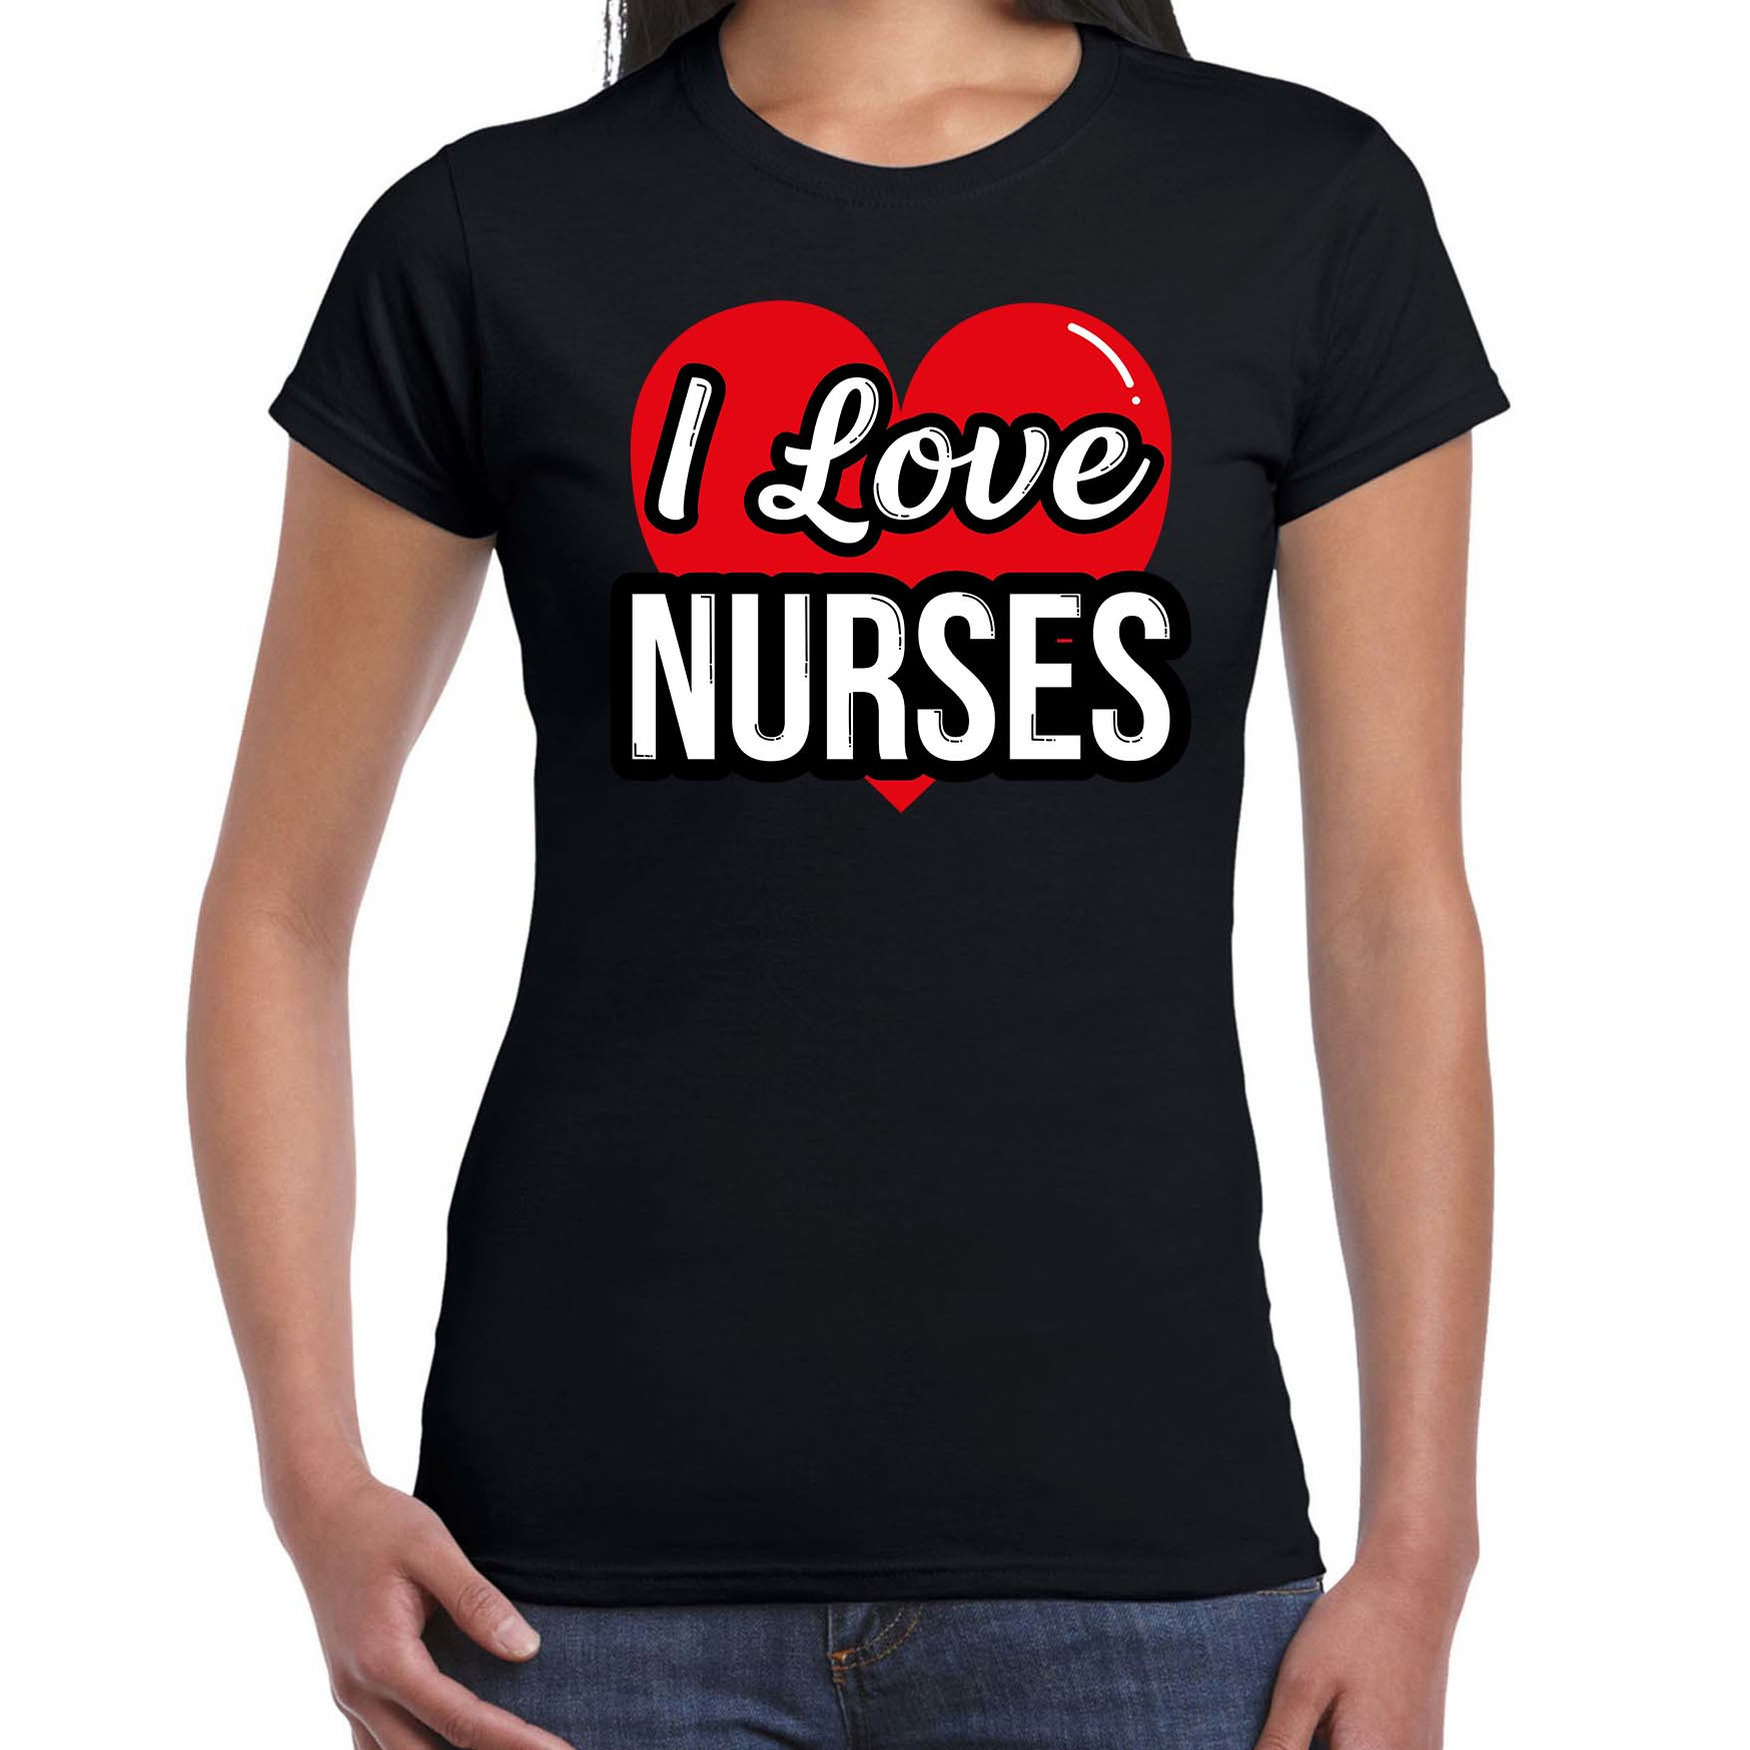 I love nurses - zusters verkleed t-shirt zwart voor dames - Outfit verkleed feest